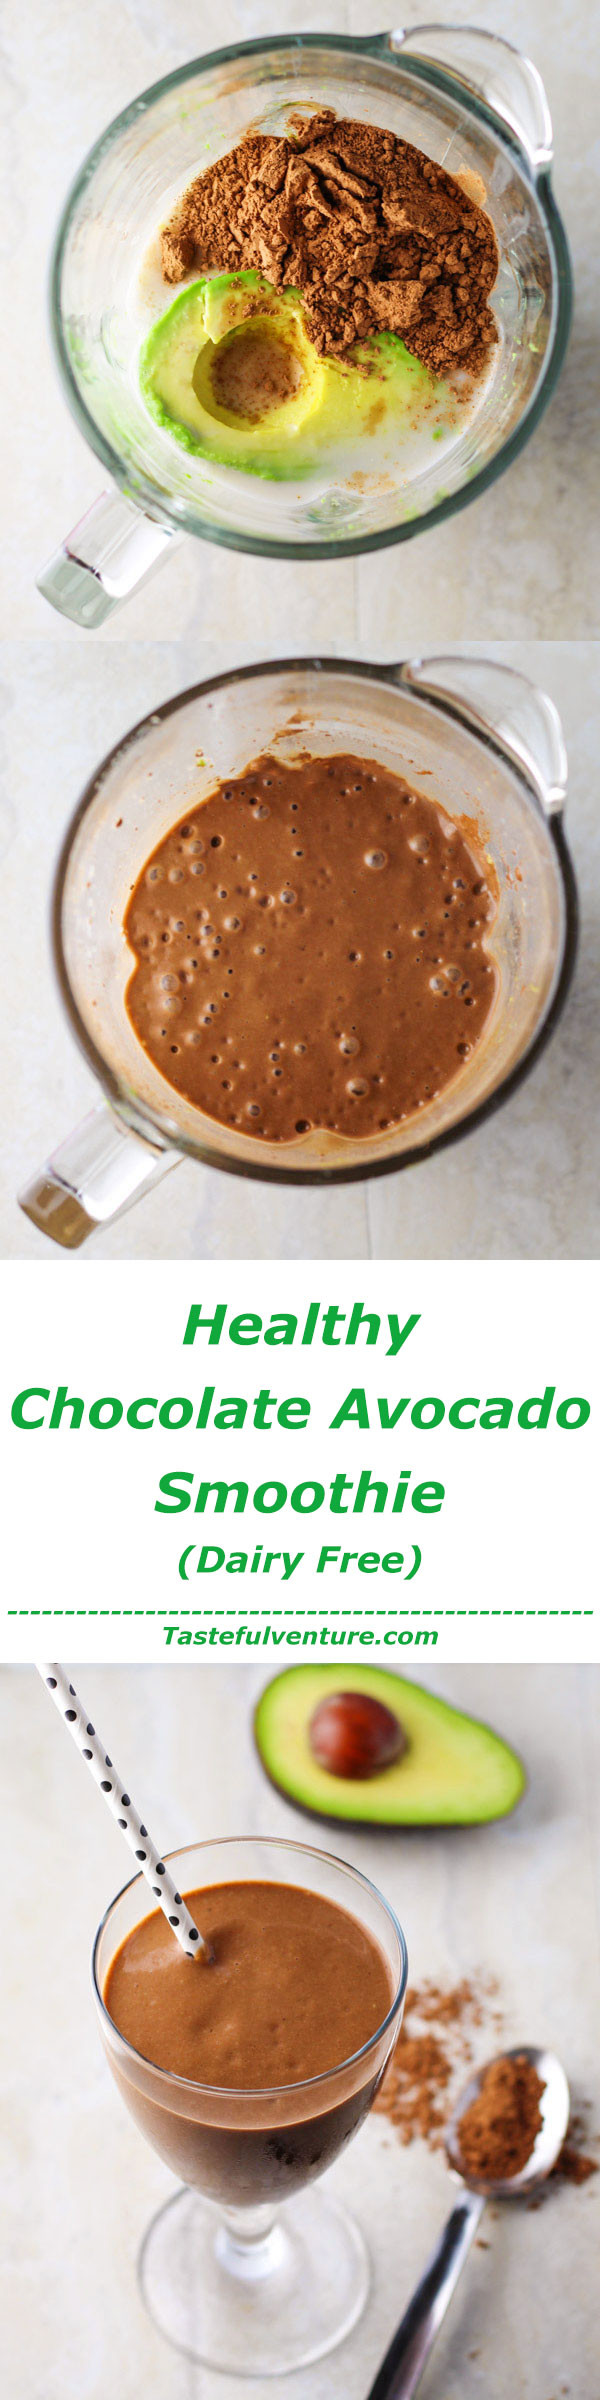 Healthy Cocoa Powder
 Healthy Chocolate Avocado Smoothie Tastefulventure